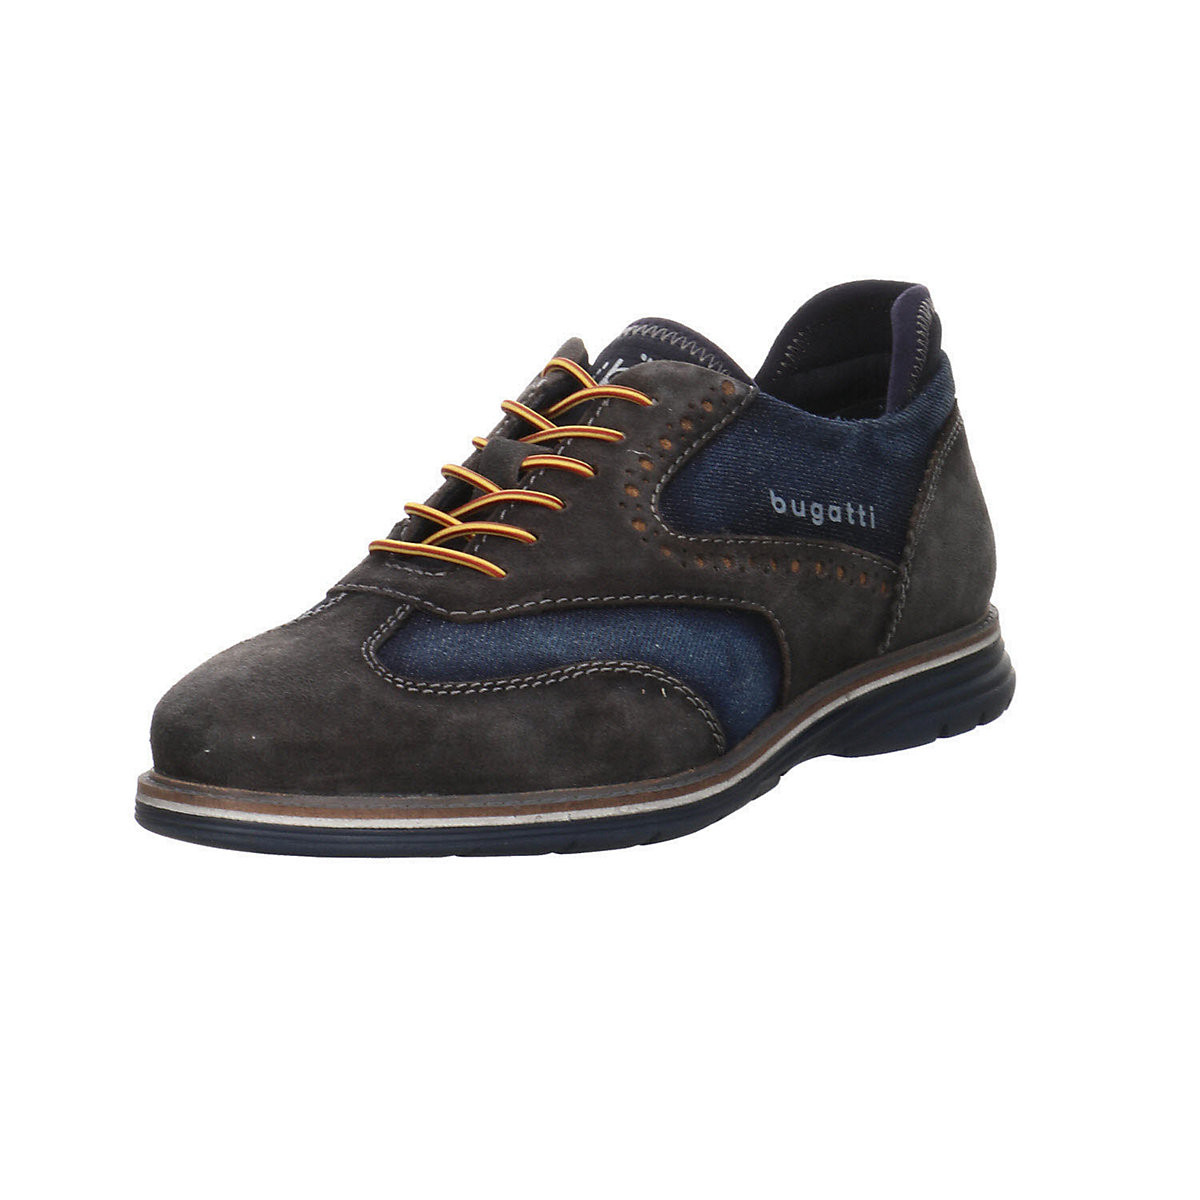 bugatti Herren Schnürhalbschuhe Sandhan Comfort Schnürschuh Freizeit Elegant Schuhe Leder-/Textilkombination uni Schnürschuhe dunkelblau